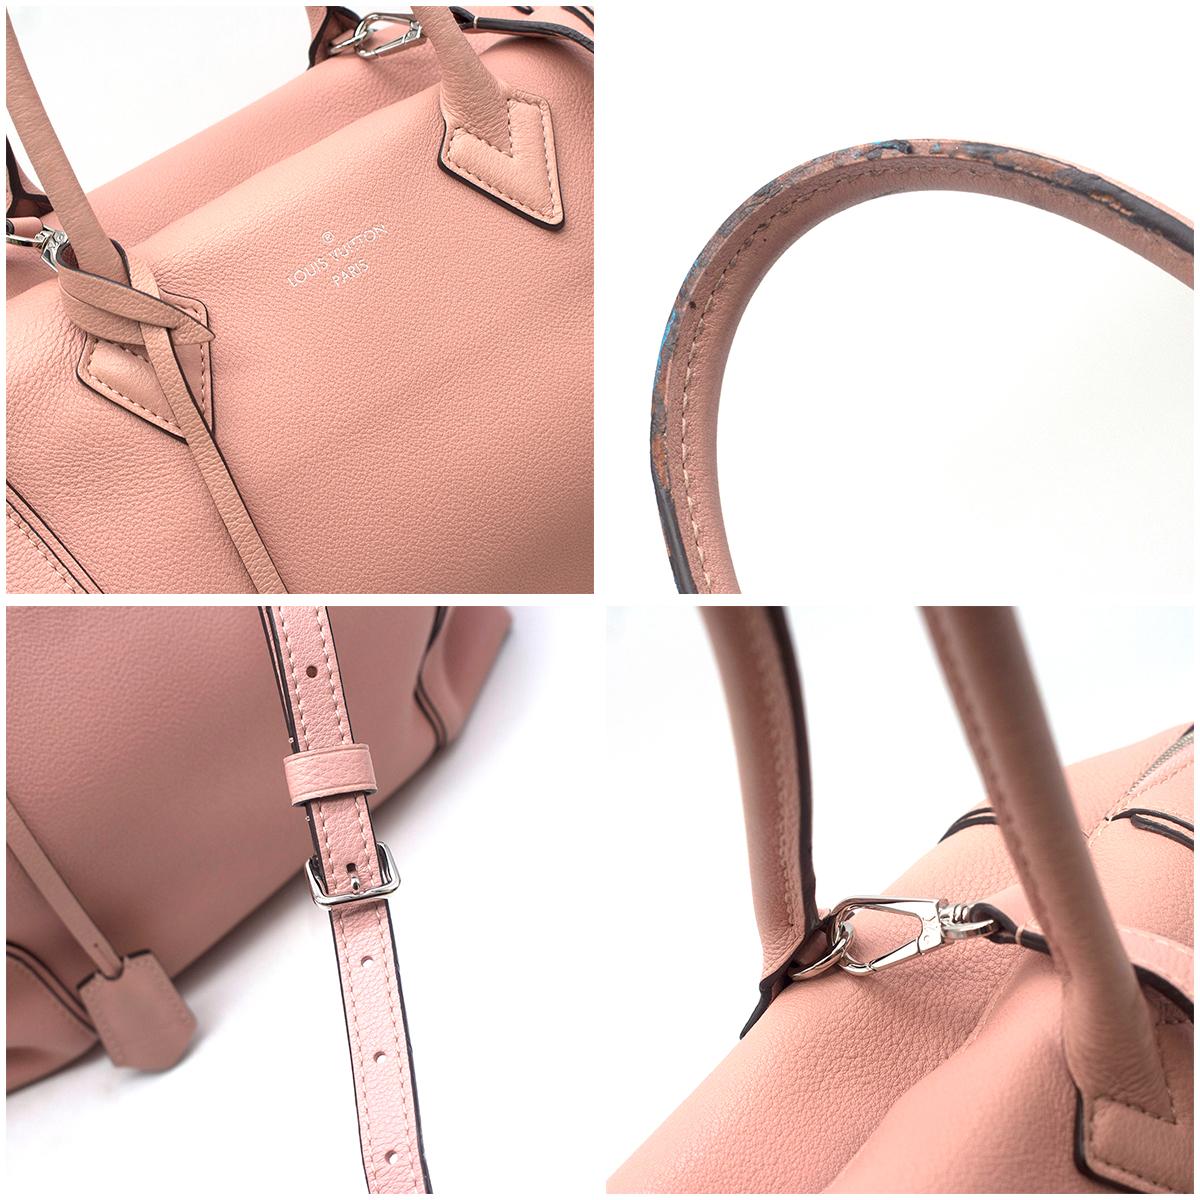 Women's Louis Vuitton Soft Lockit Bag For Sale